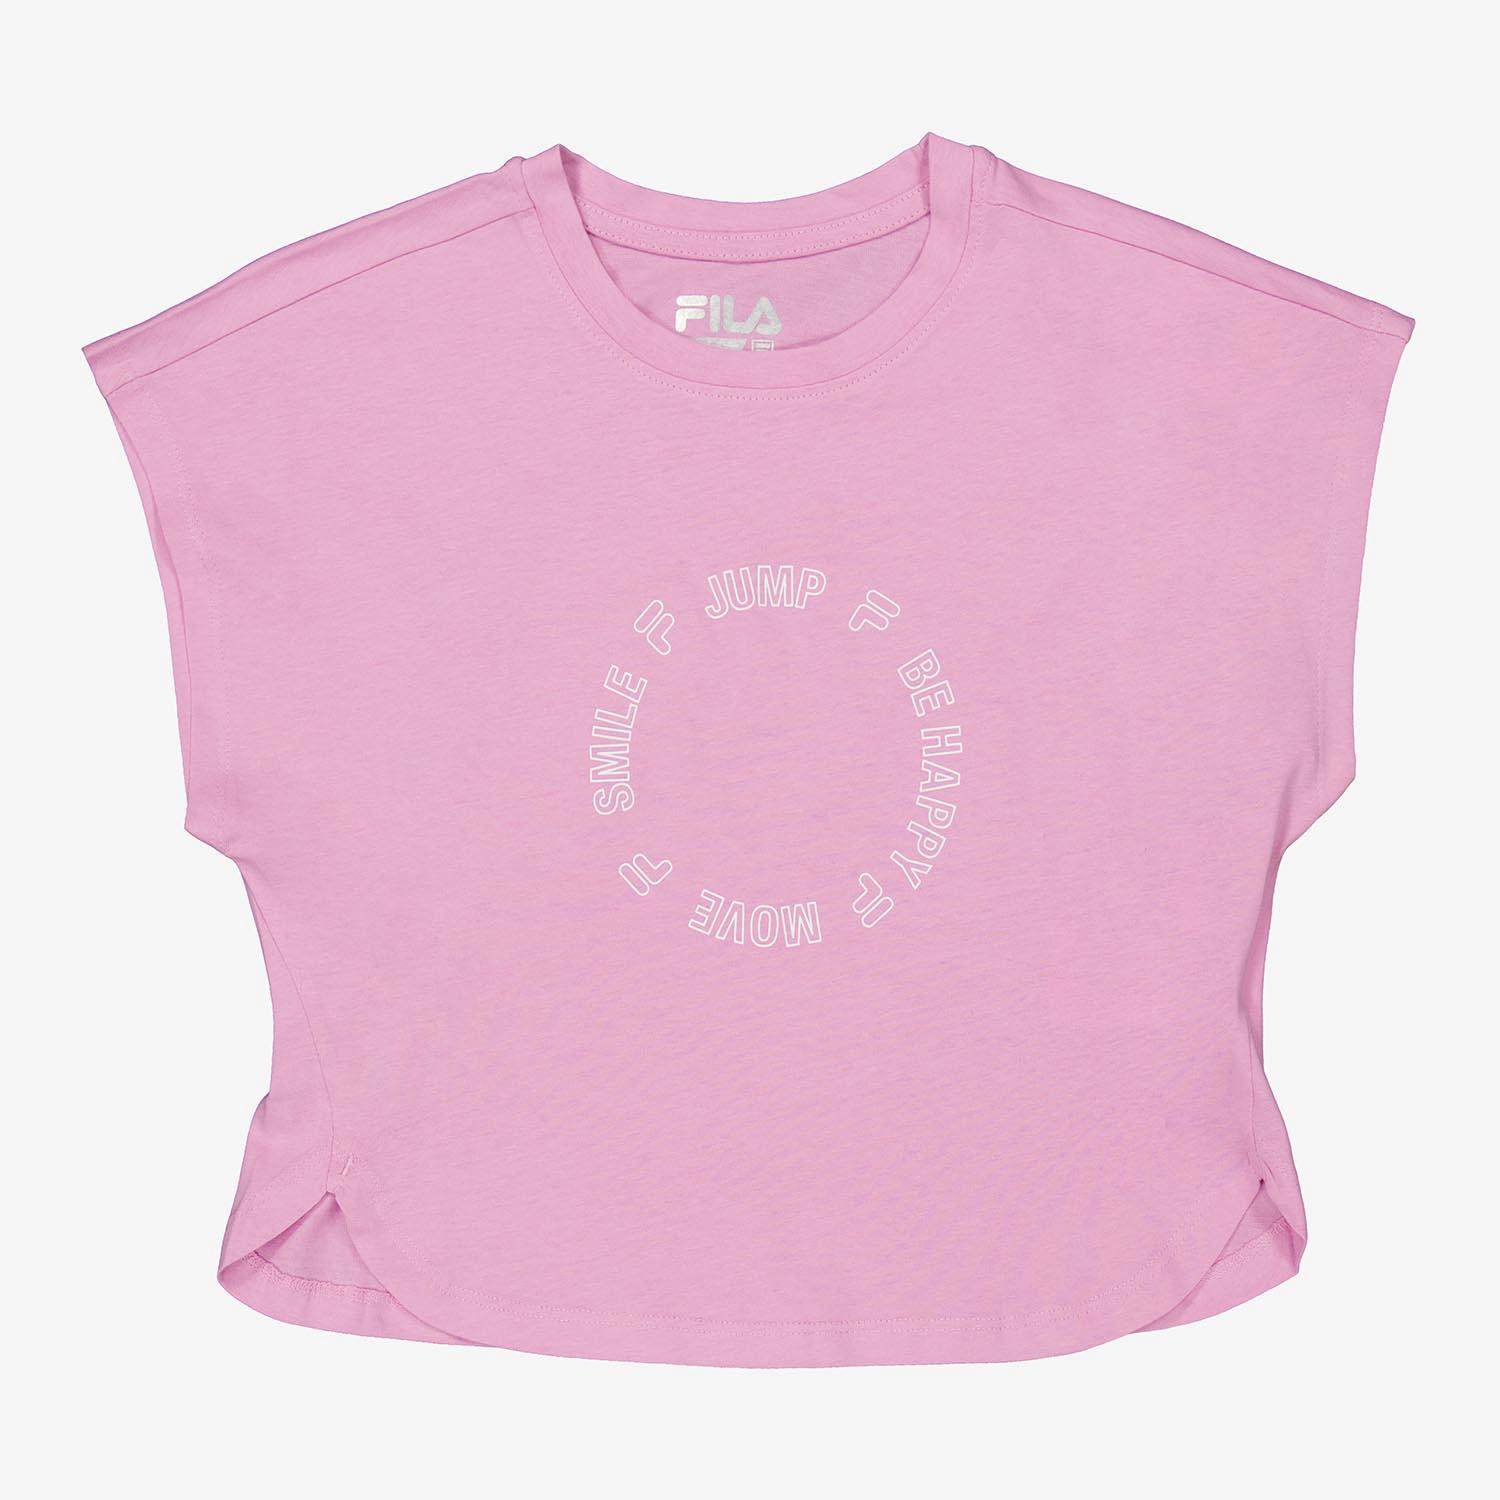 I Wear Pink 4 - Camiseta para mujer, color rosa, talla L, Rosado